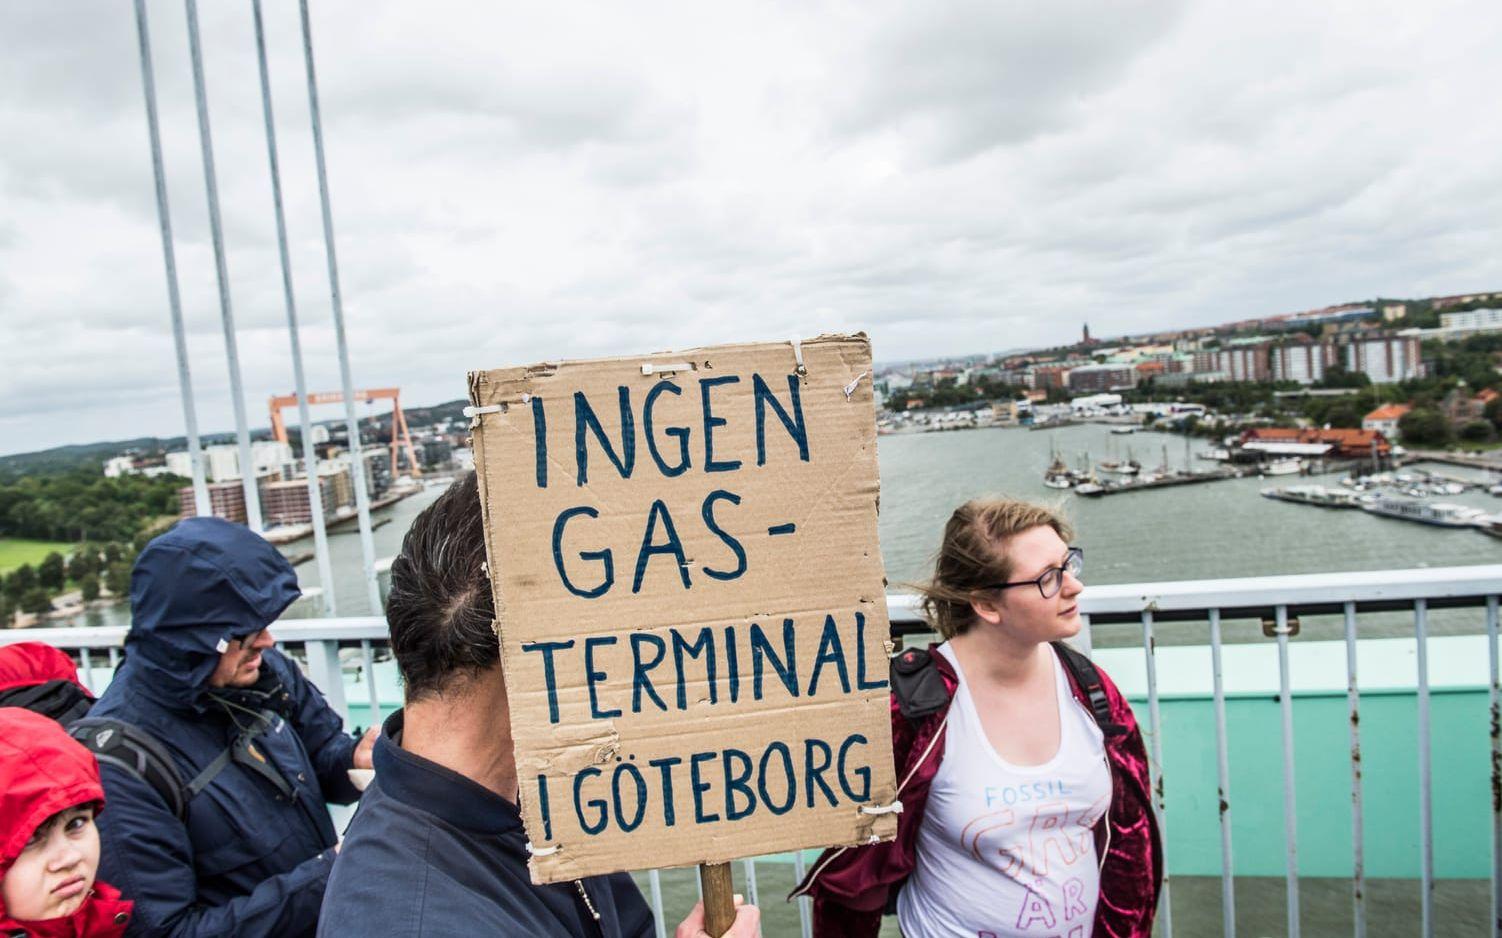 De protesterade mot fossilgasterminalen som ska byggas i Göteborg. Bild: Olof Ohlsson